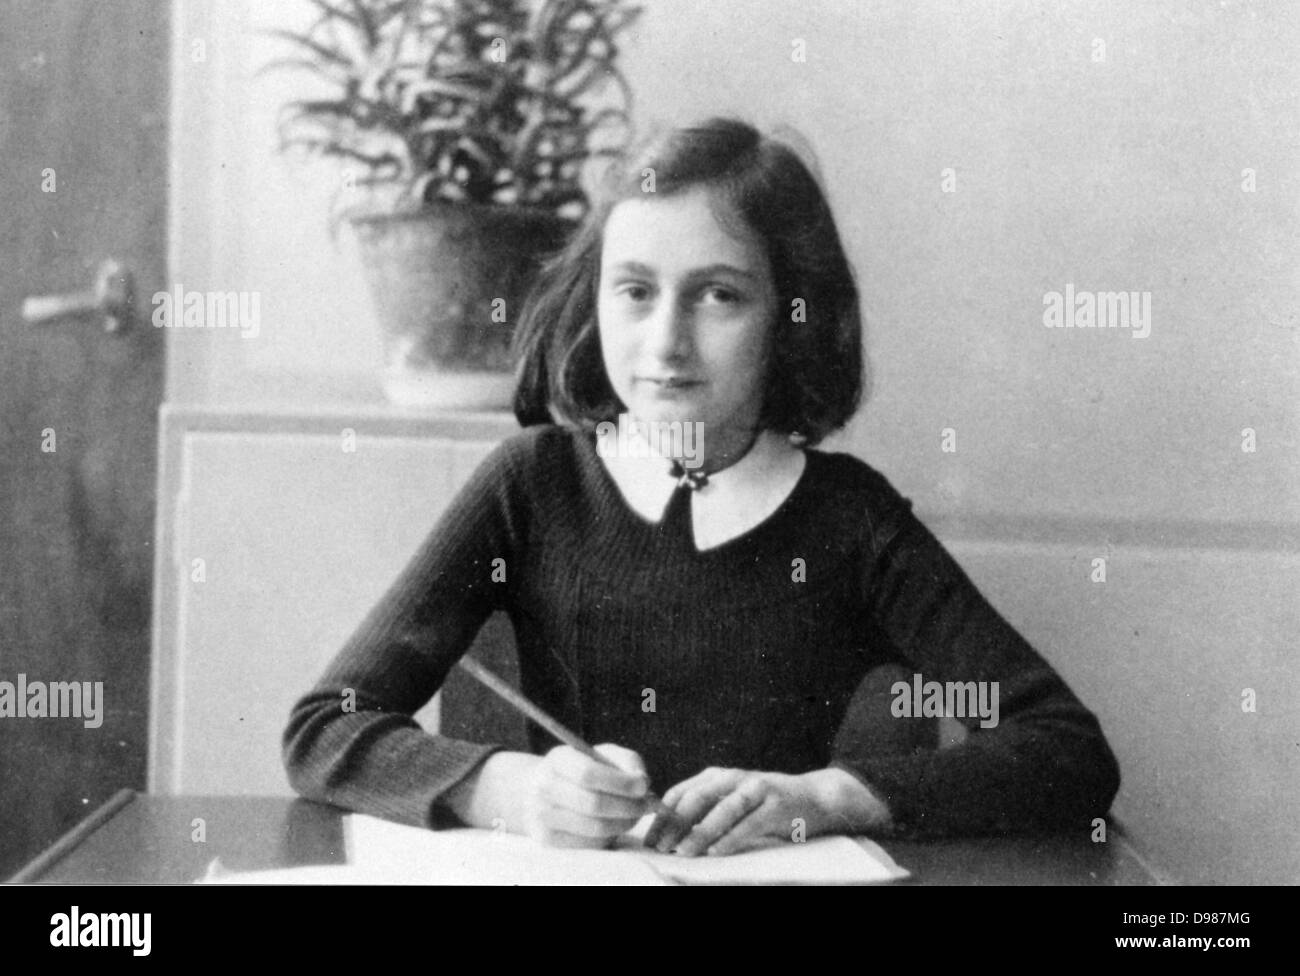 Anne Frank (1929-1945) weltberühmten Tagebuch Pläne zwei Jahre ihres Lebens von 1942 bis 1944, als ihre Familie versteckt wurden in Amsterdam von Deutschen Nazis. Das Tagebuch beginnt gerade, bevor die Familie in Ihre "geheimer Anhang "zurückgezogen. Stockfoto